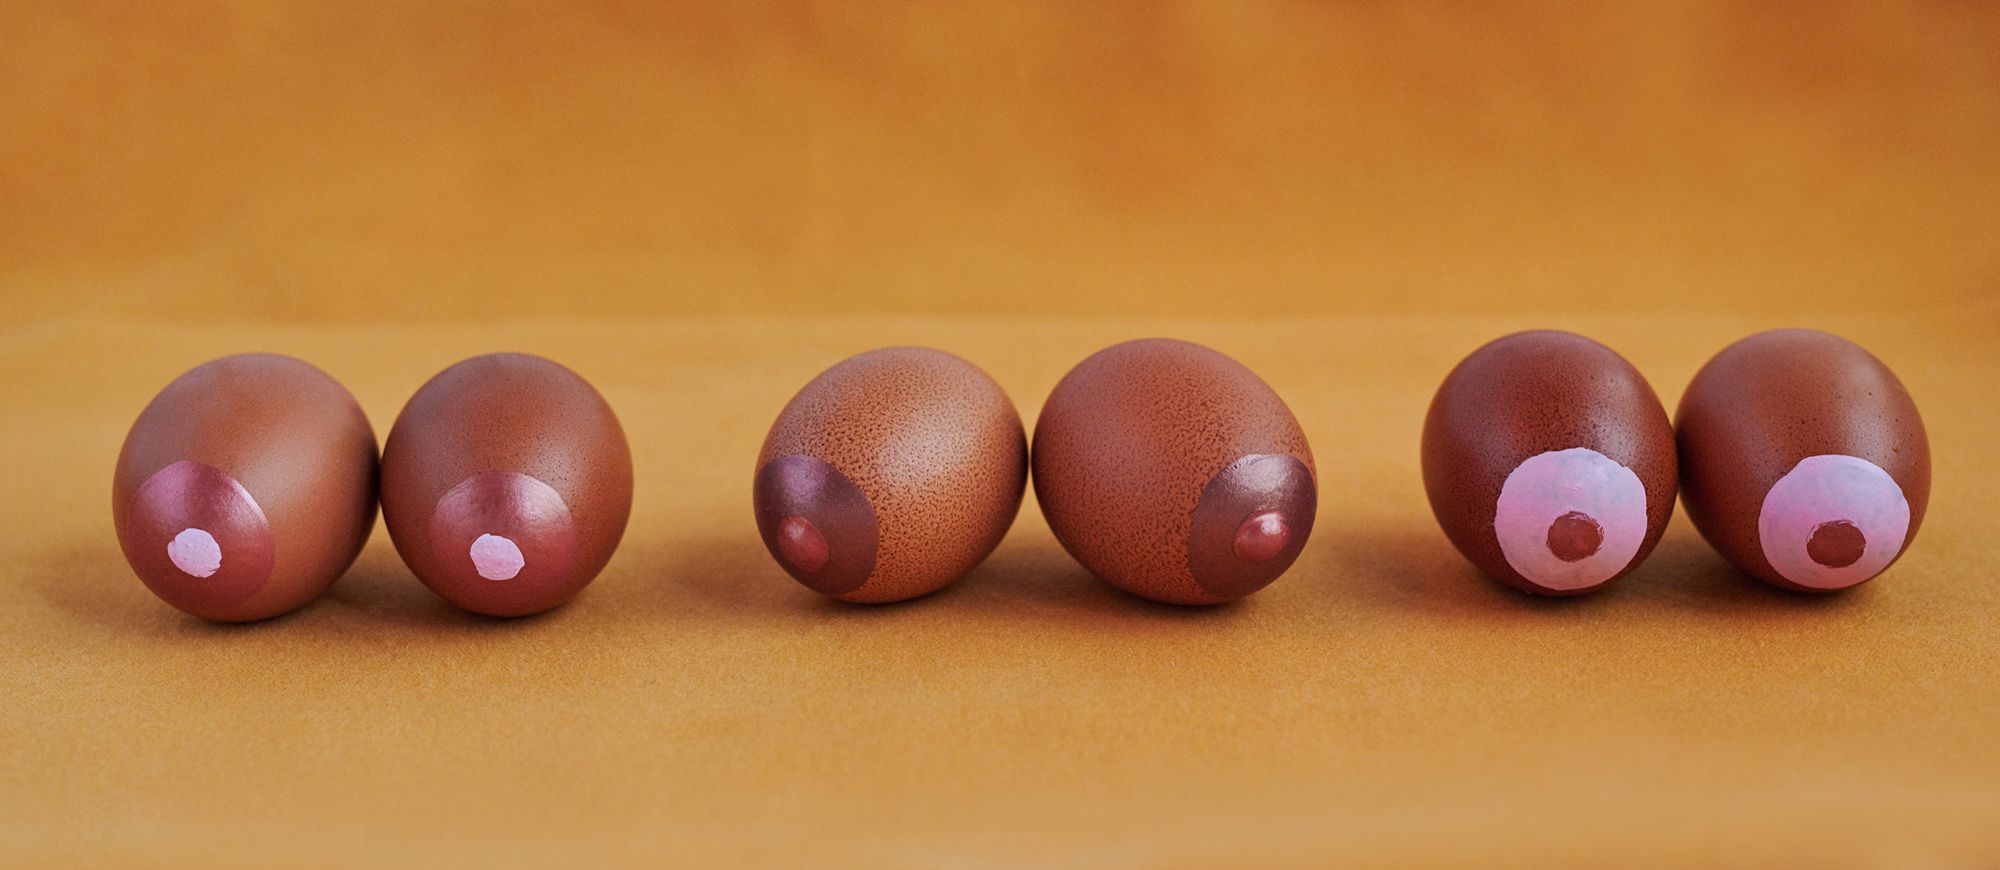 Eier, auf die Nippel gemalt sind